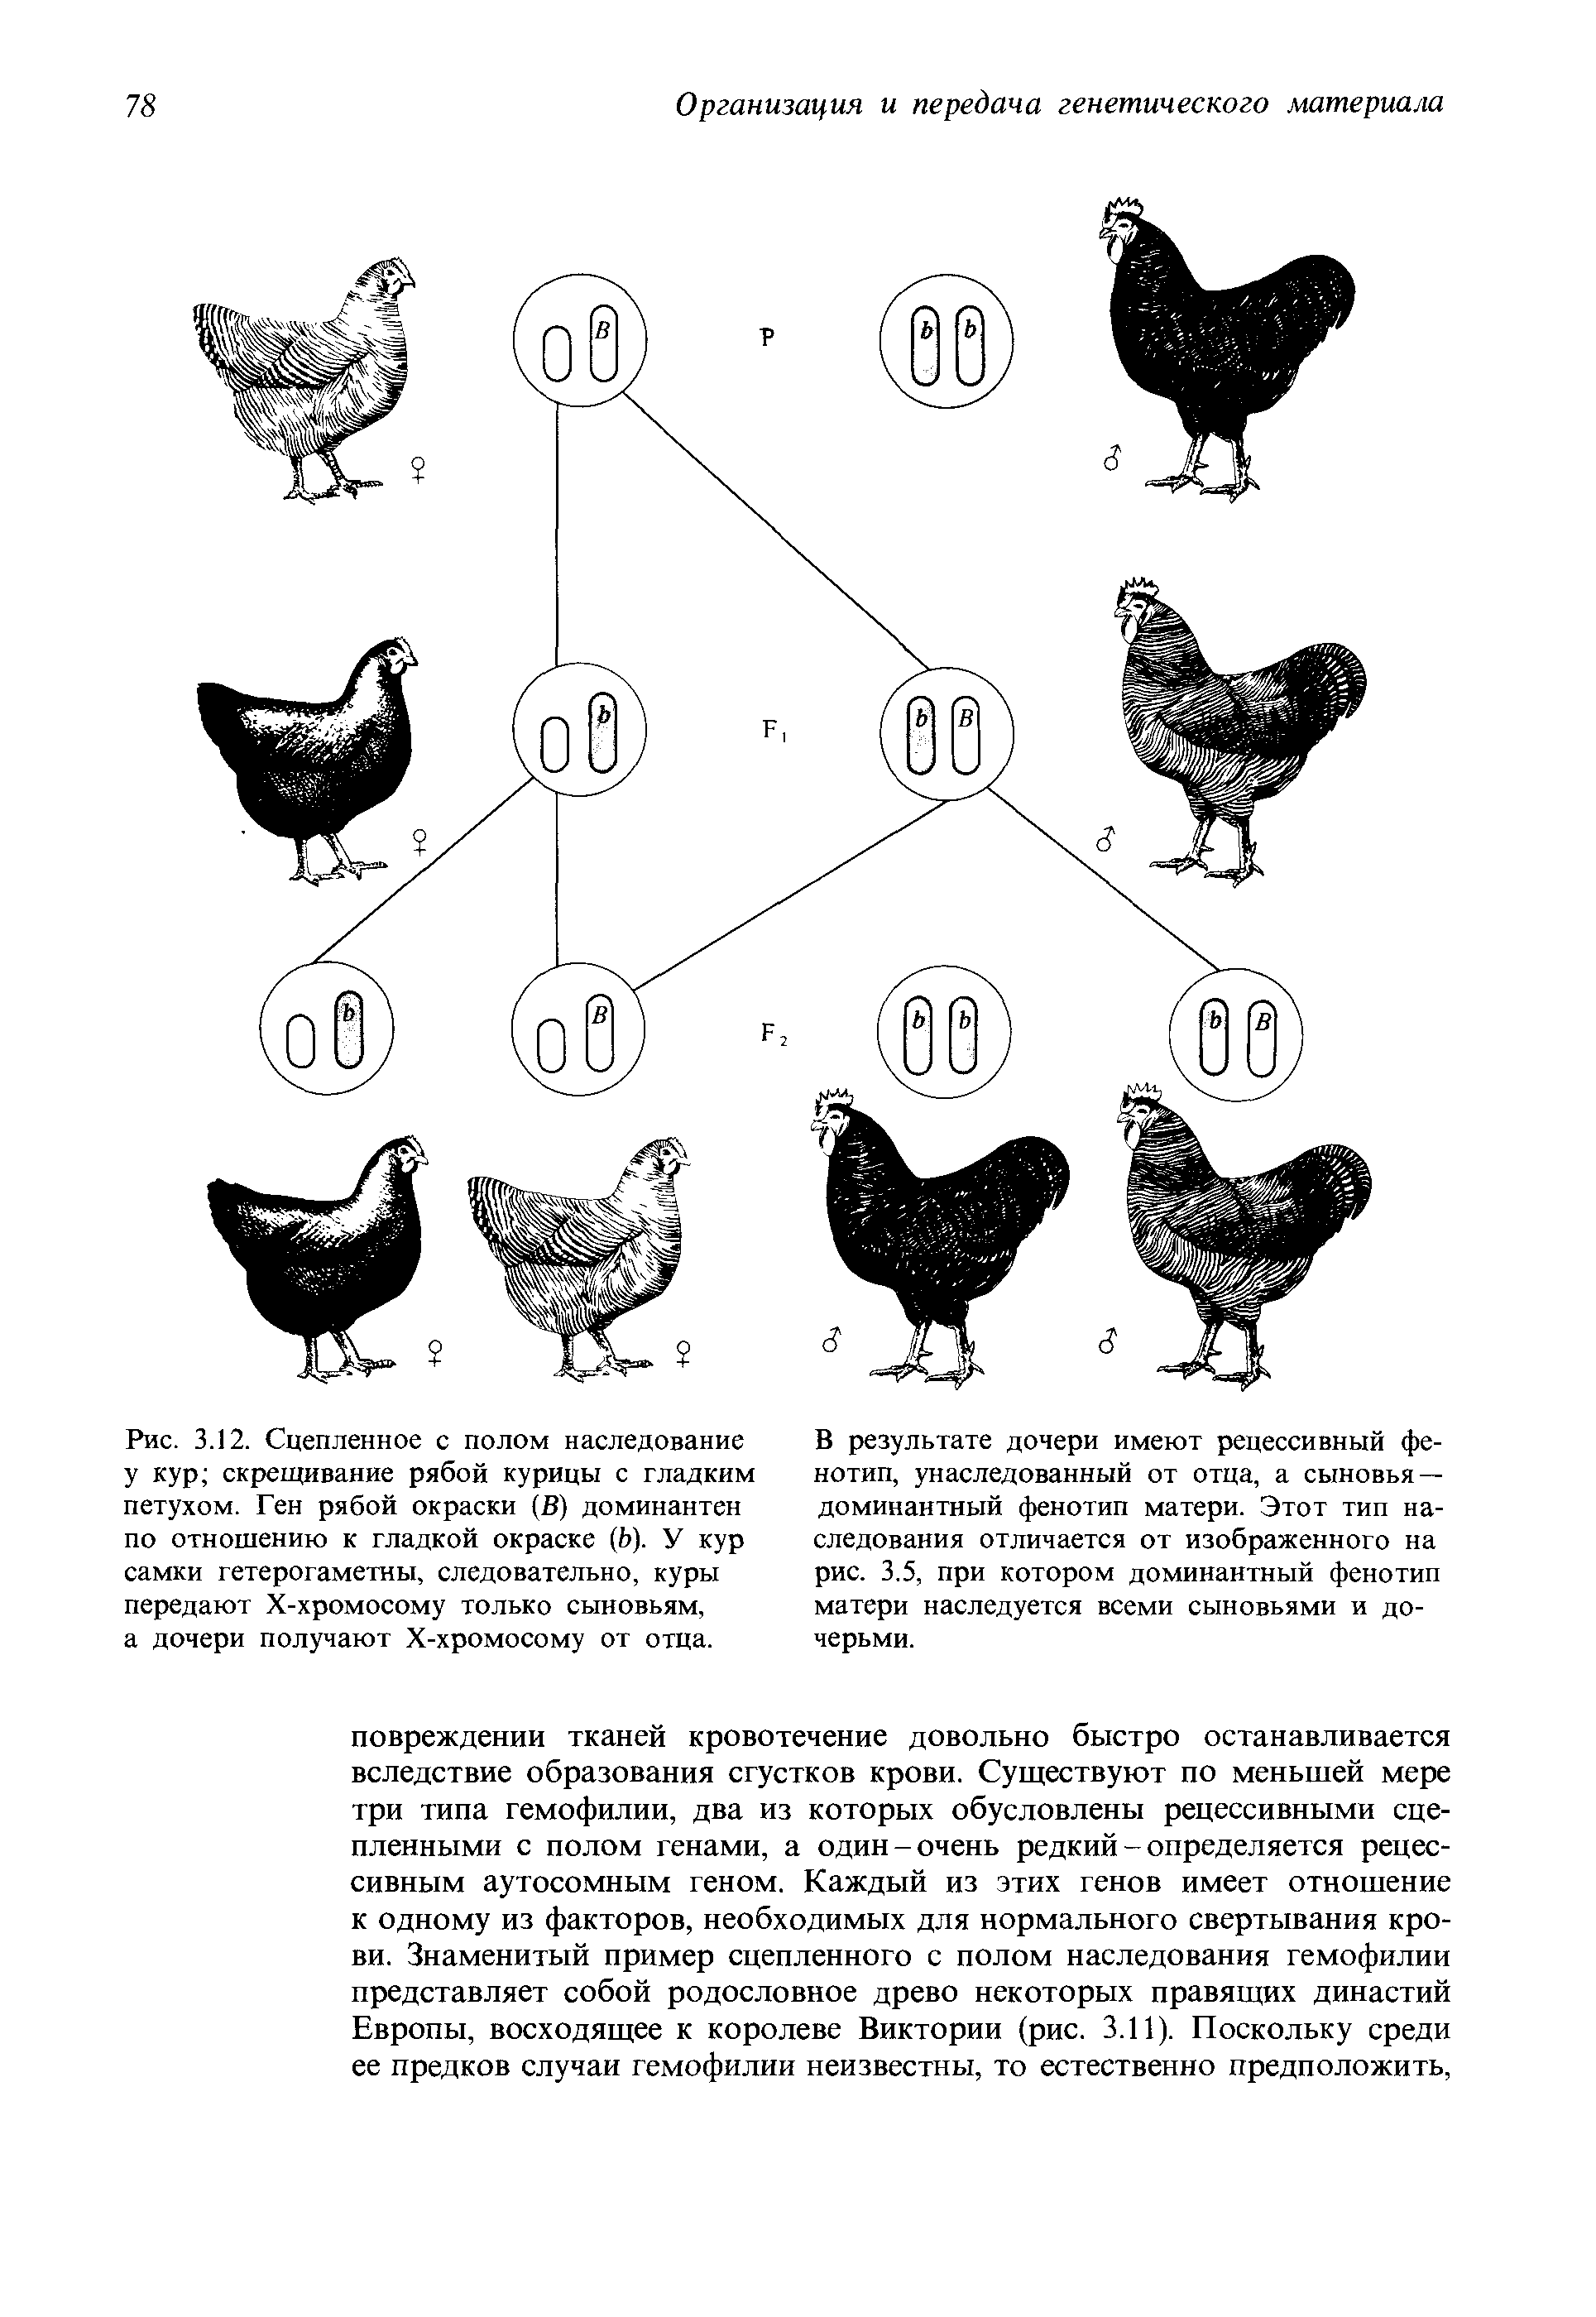 При скрещивании курицы с листовидным гребнем